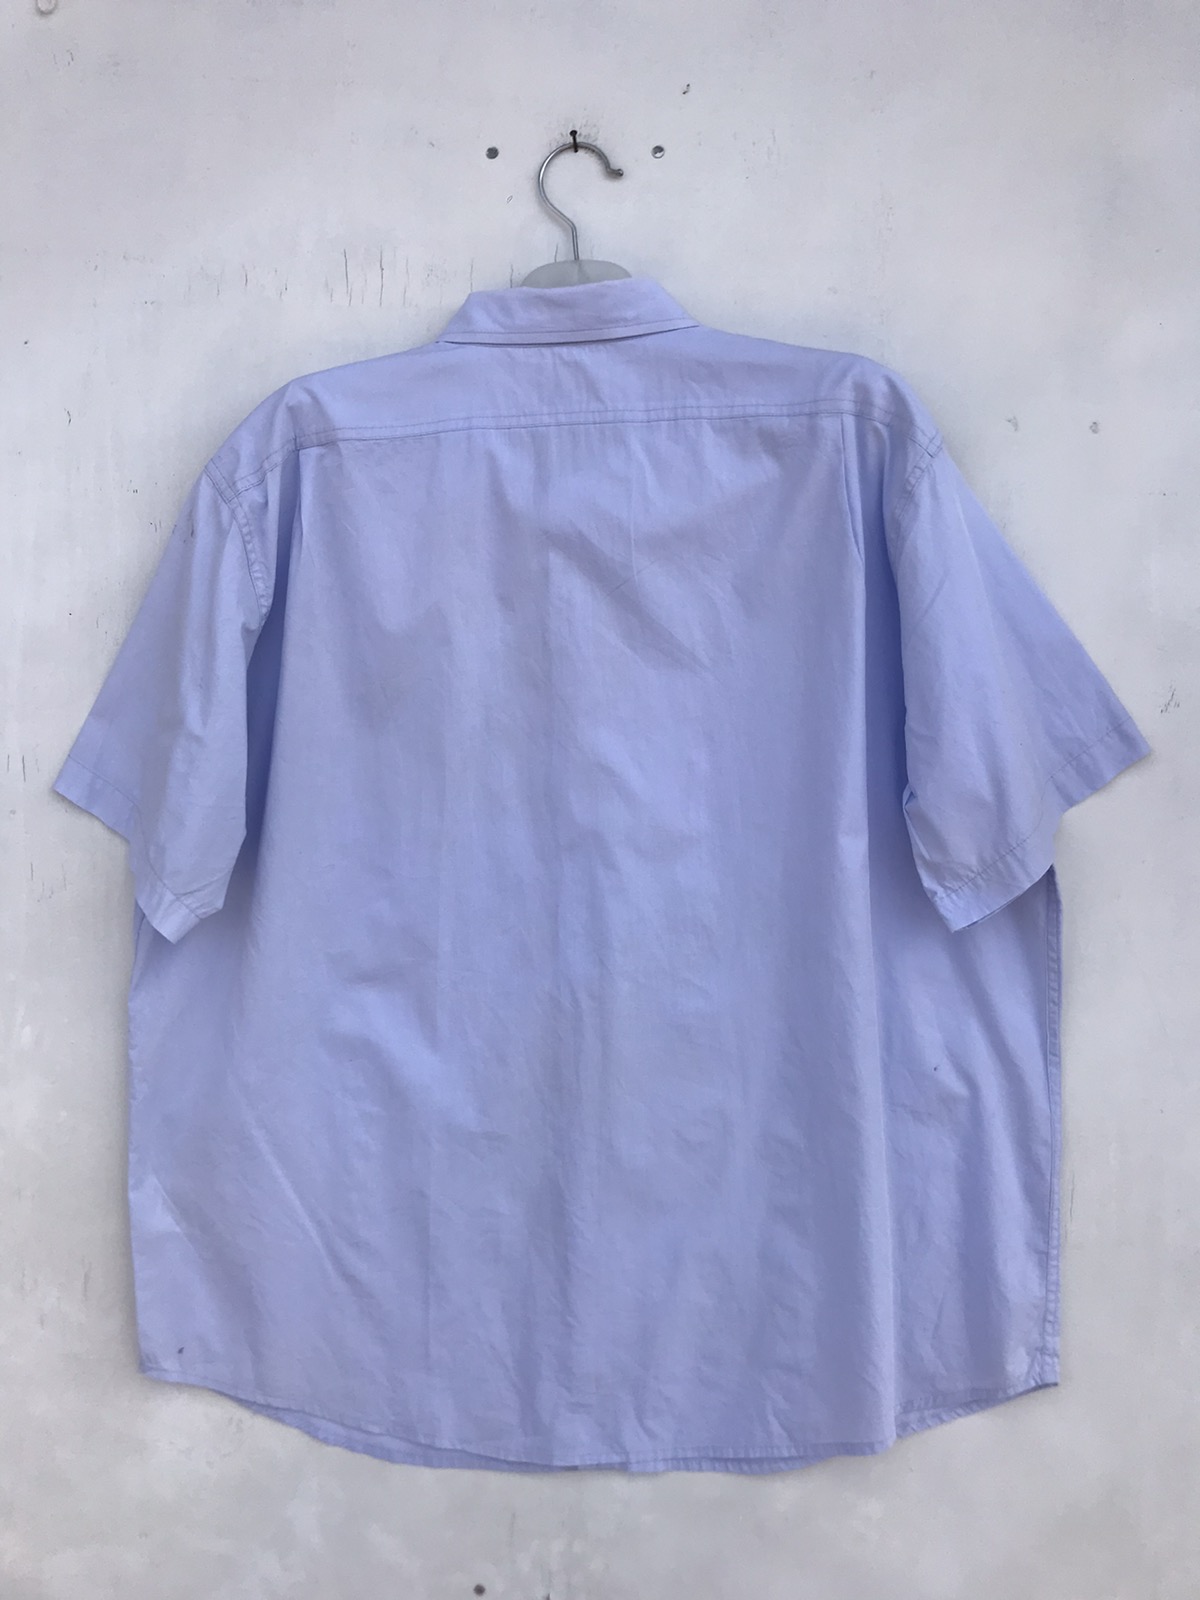 Filson Garment Shirt - 2